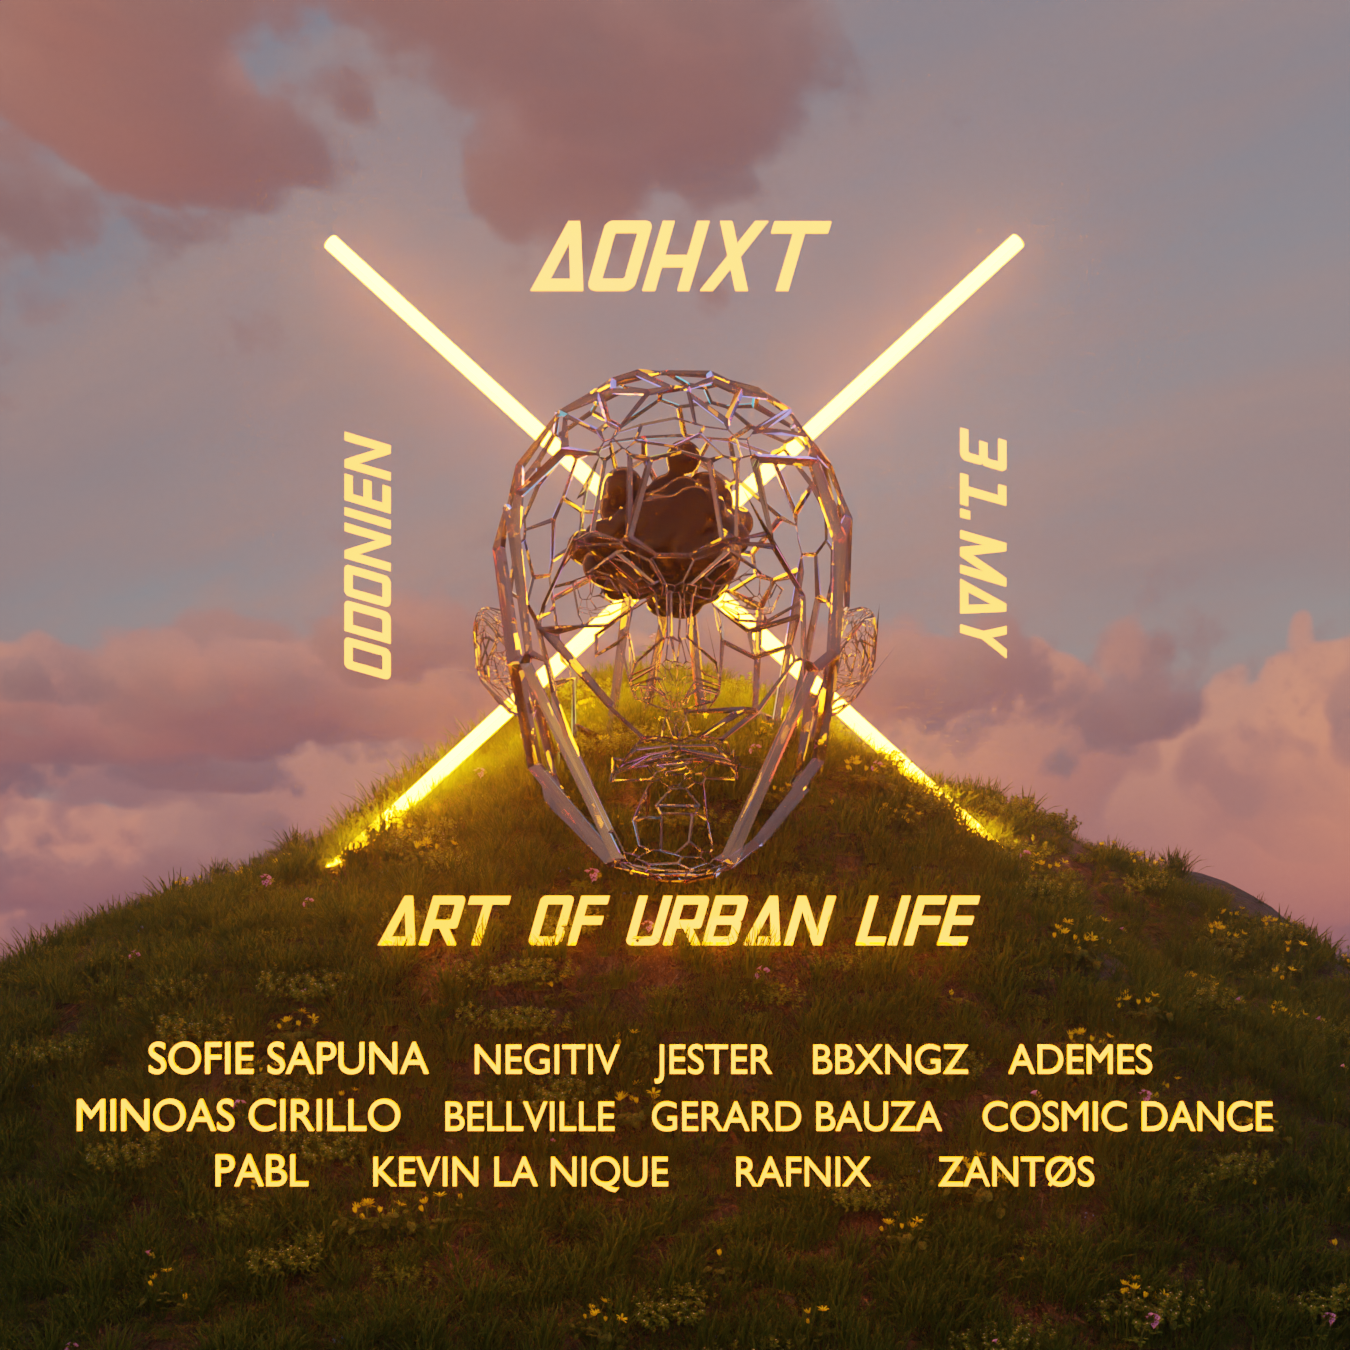 ART OF URBAN LIFE pres. AOHXT - フライヤー表